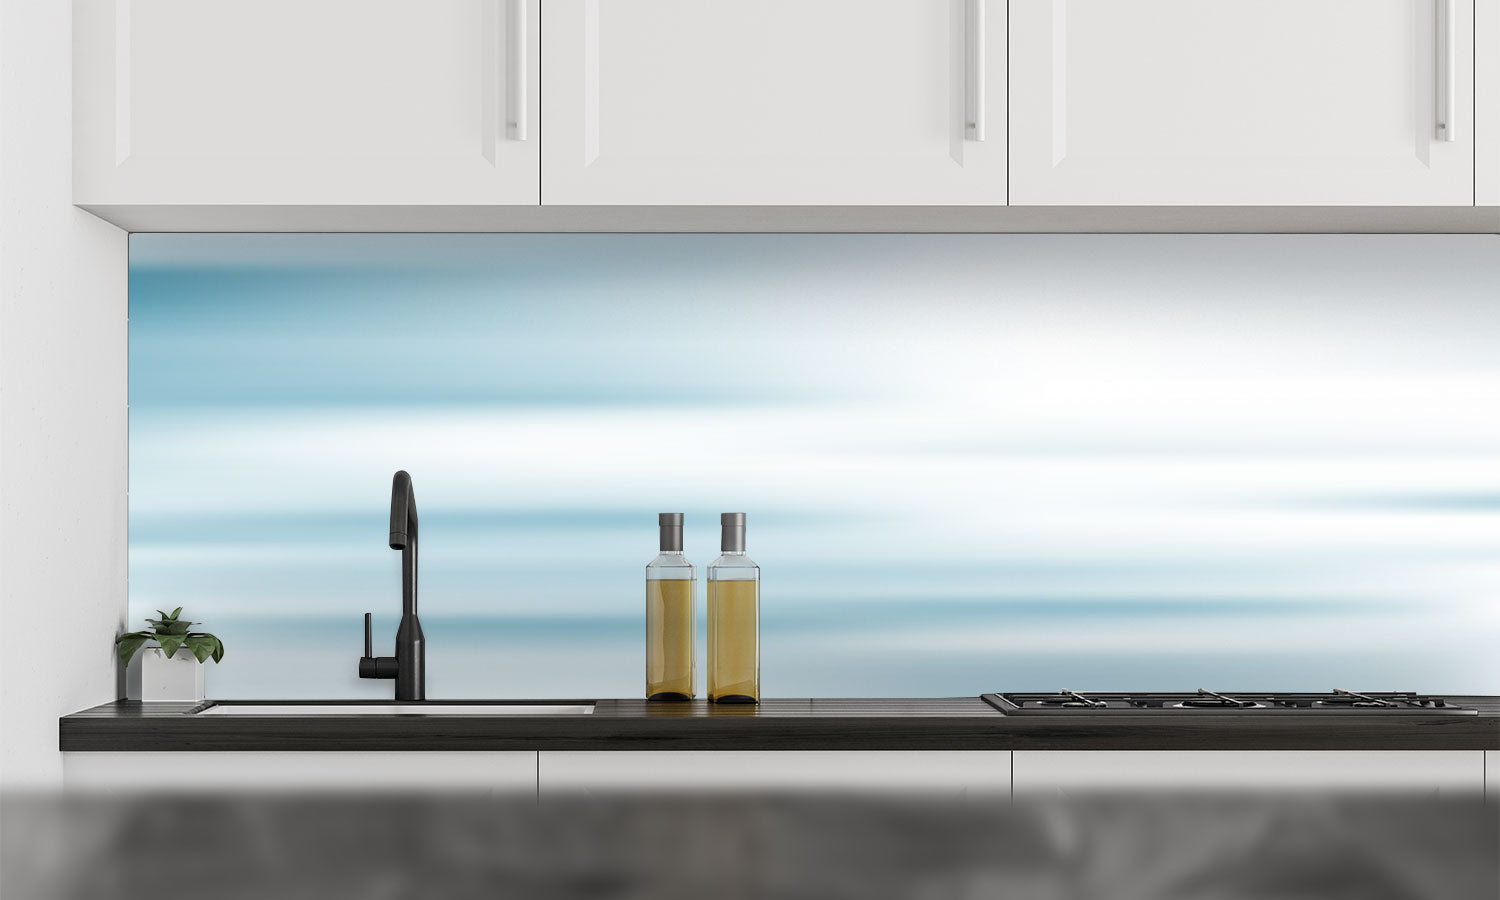 Kuhinjski paneli  Flows blue soft  - Stekleni / PVC plošče / Pleksi steklo - s tiskom za kuhinjo, Stenske obloge PKU0139 - Life-decor.si